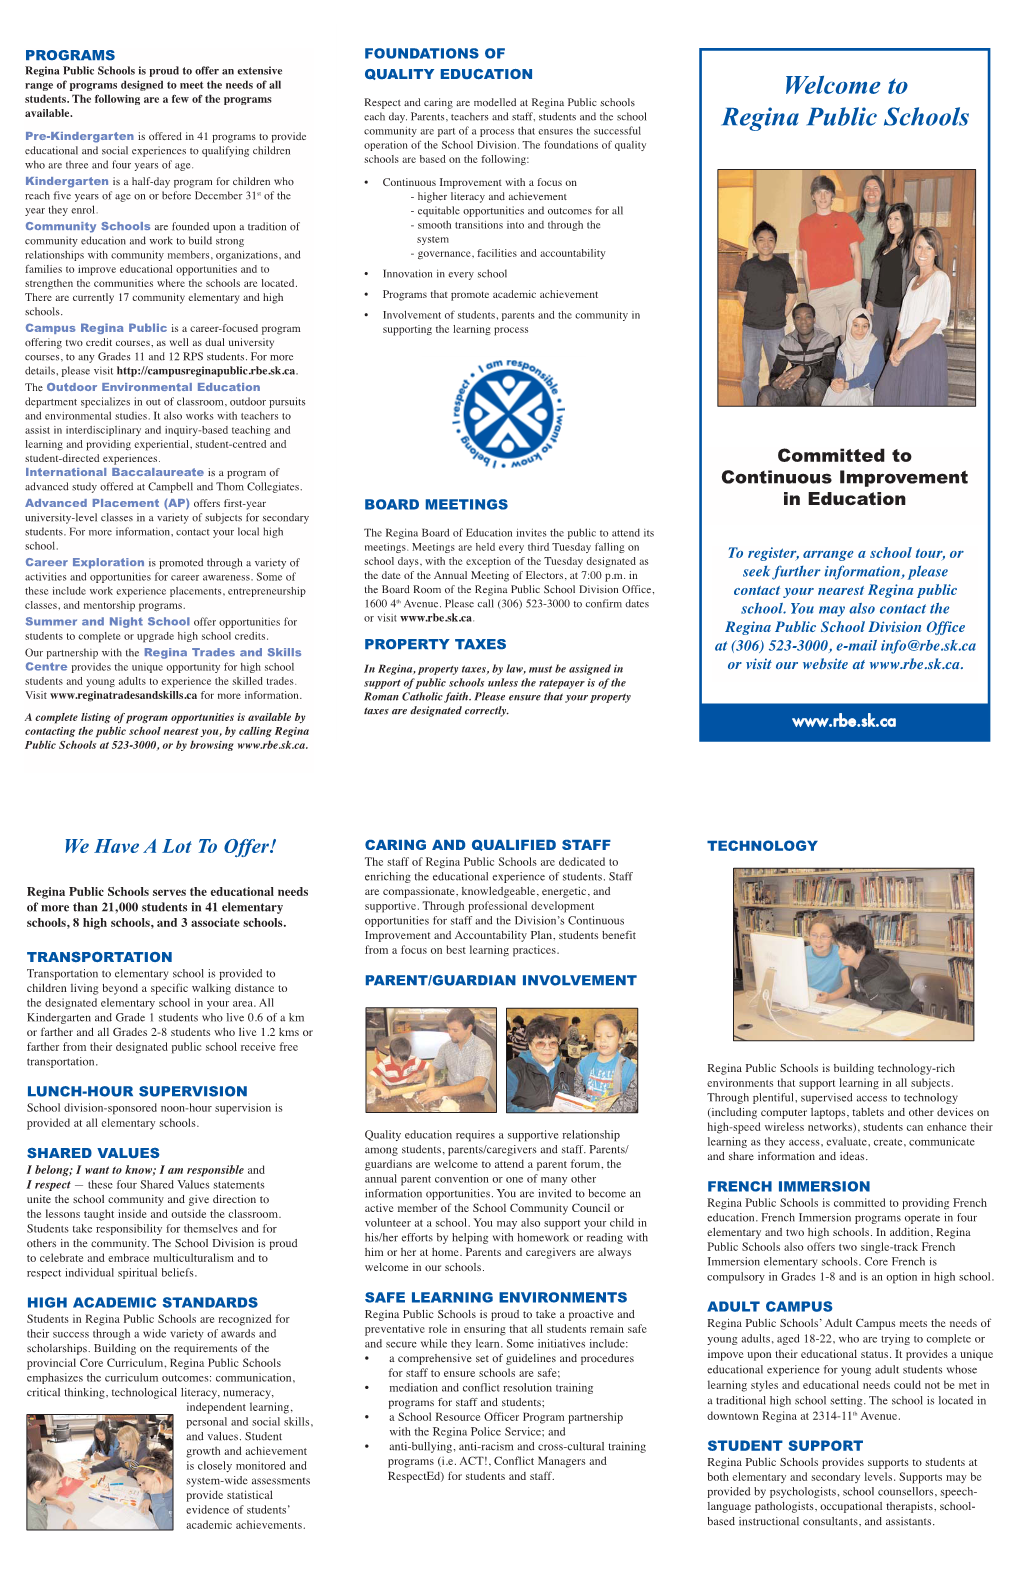 Public Schools Brochure 2015 for Web.Qx